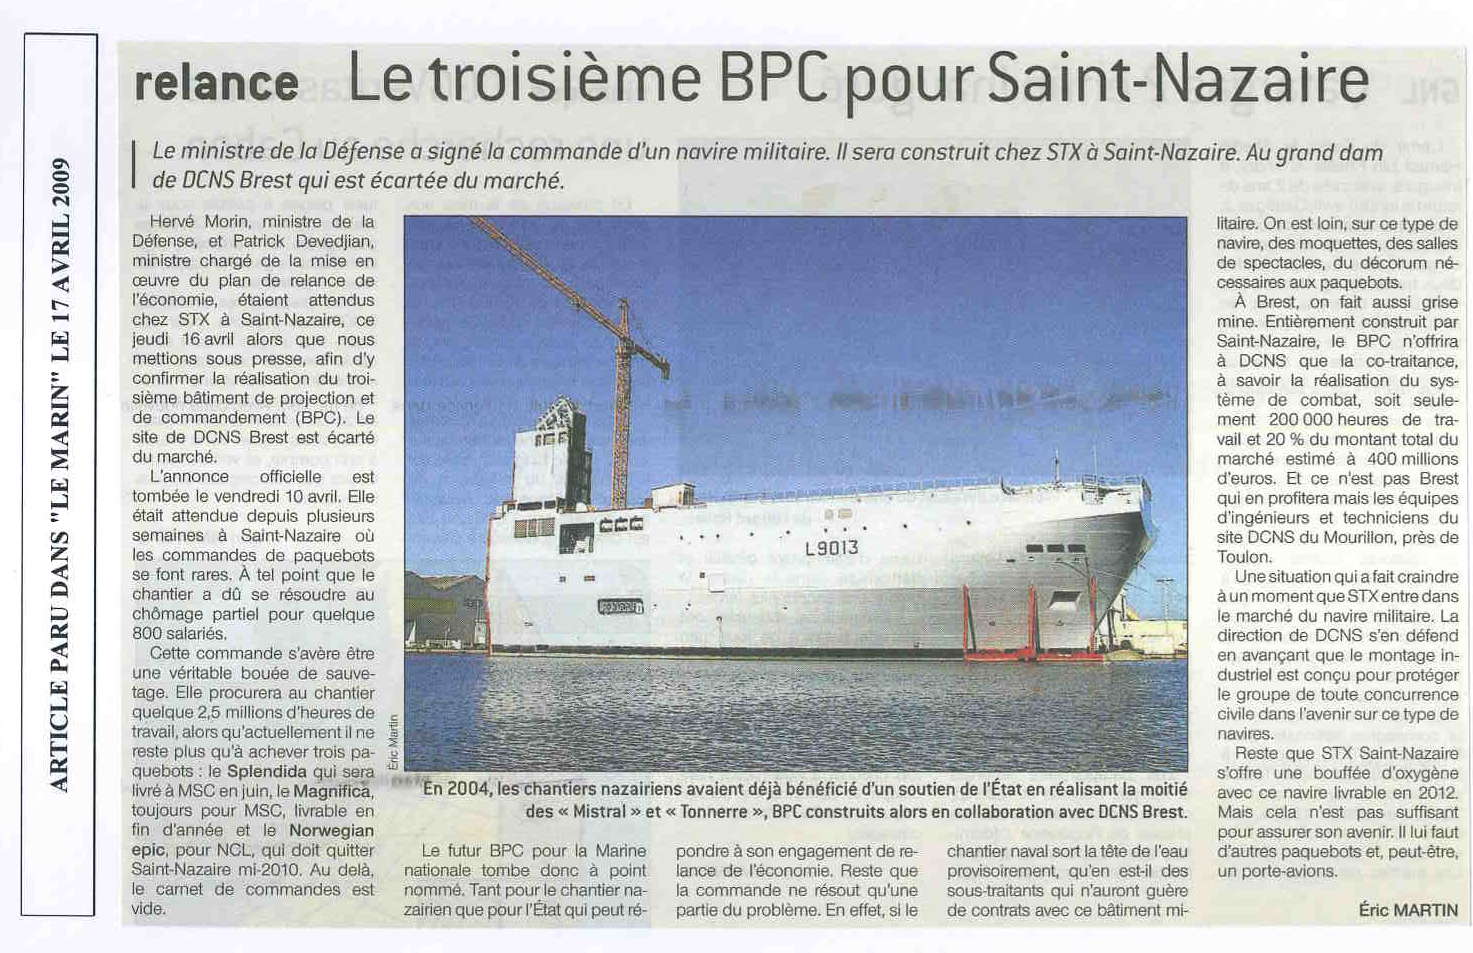 17 04 09_Le_troisieme_BPC_pour_Saint-Nazaire.jpg